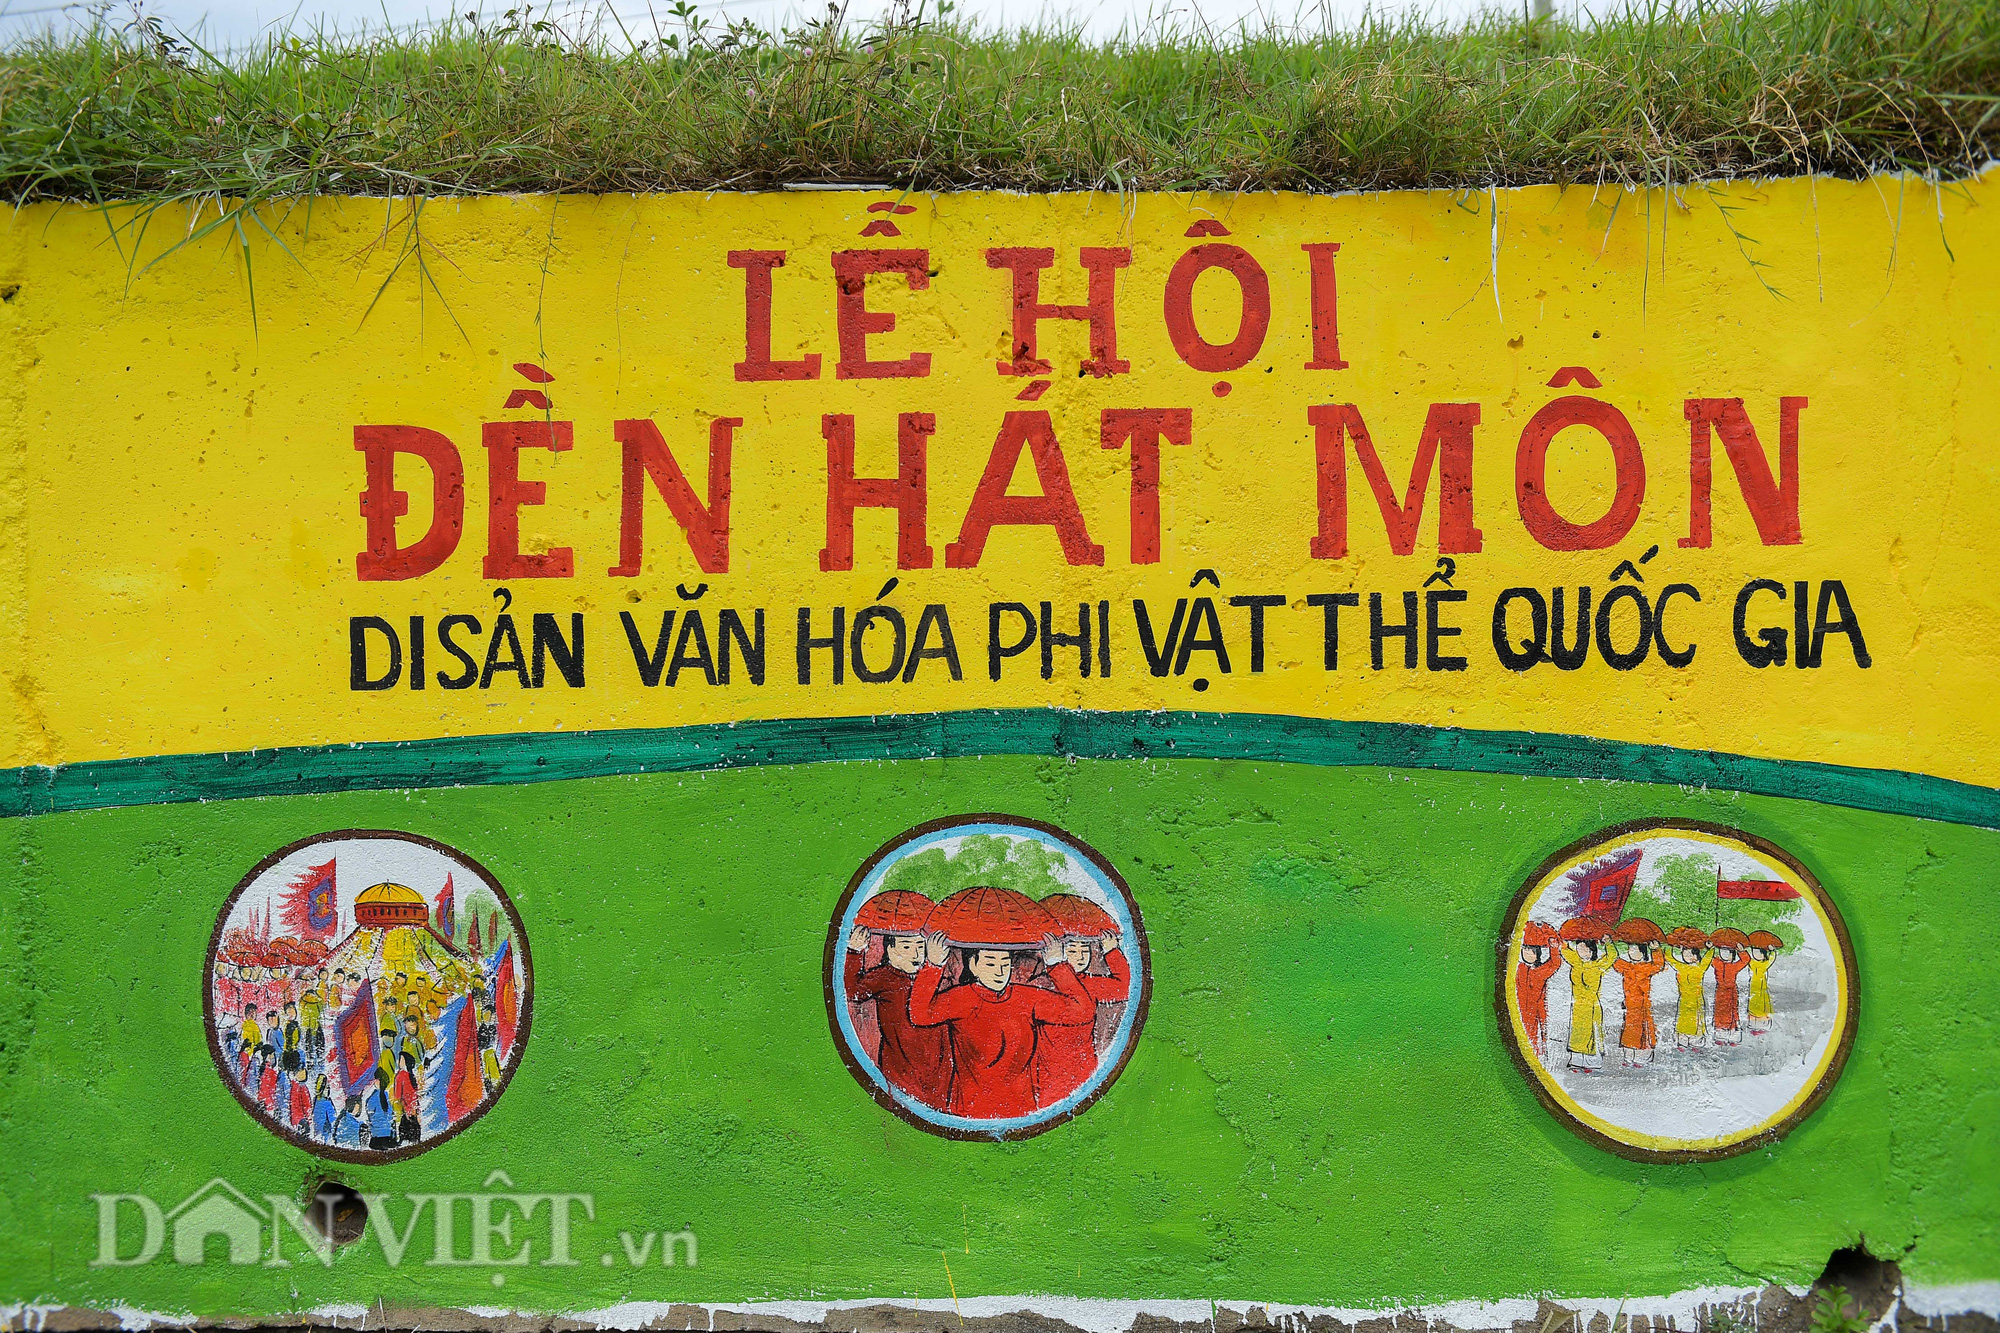 Ngỡ ngàng con đường bích họa dài hơn 2km mới xuất hiện ở Hà Nội - Ảnh 4.